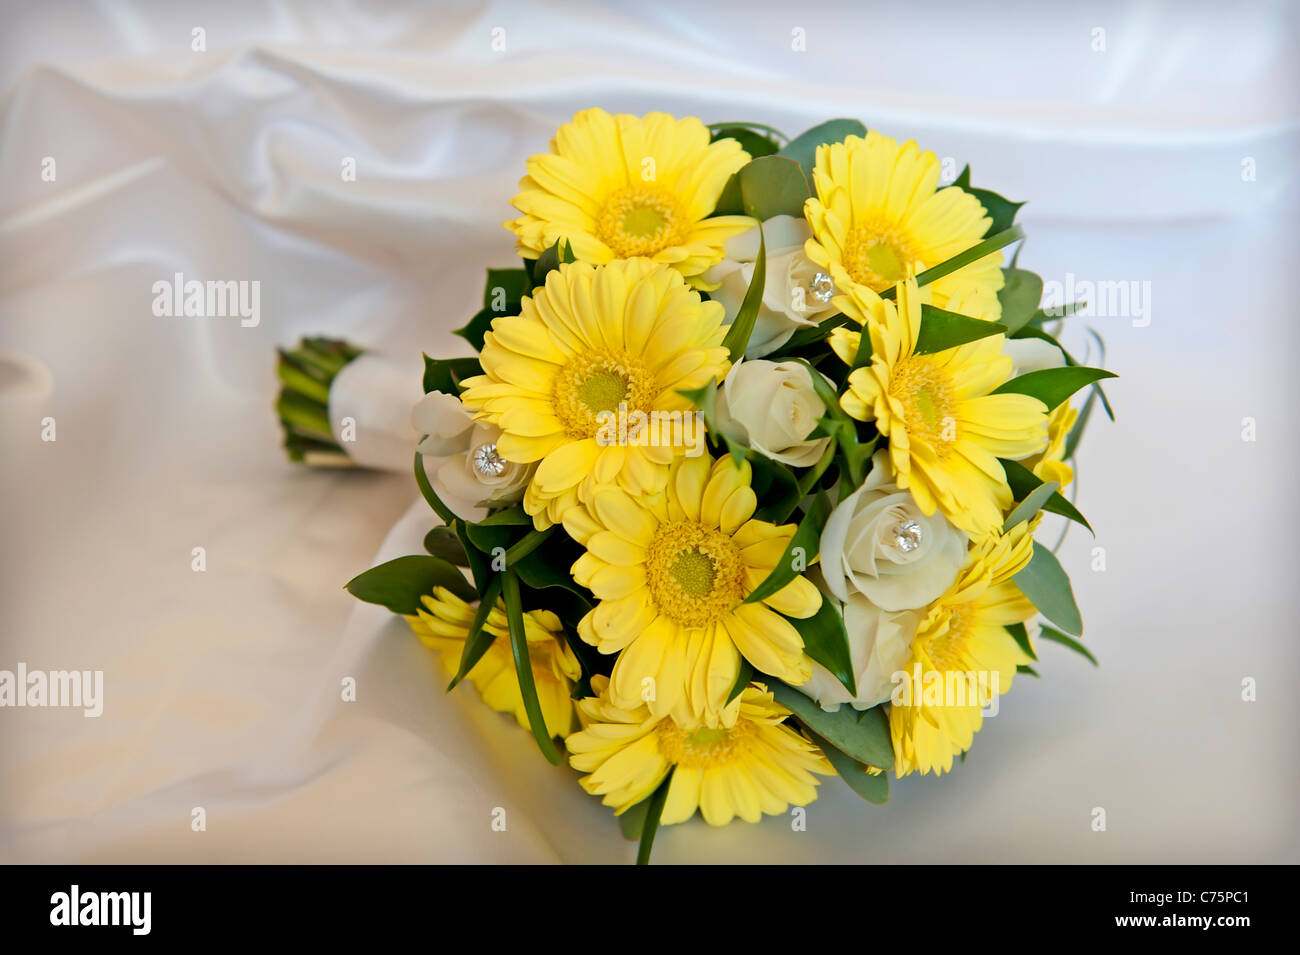 Brides bouquet de marguerites jaunes Banque D'Images